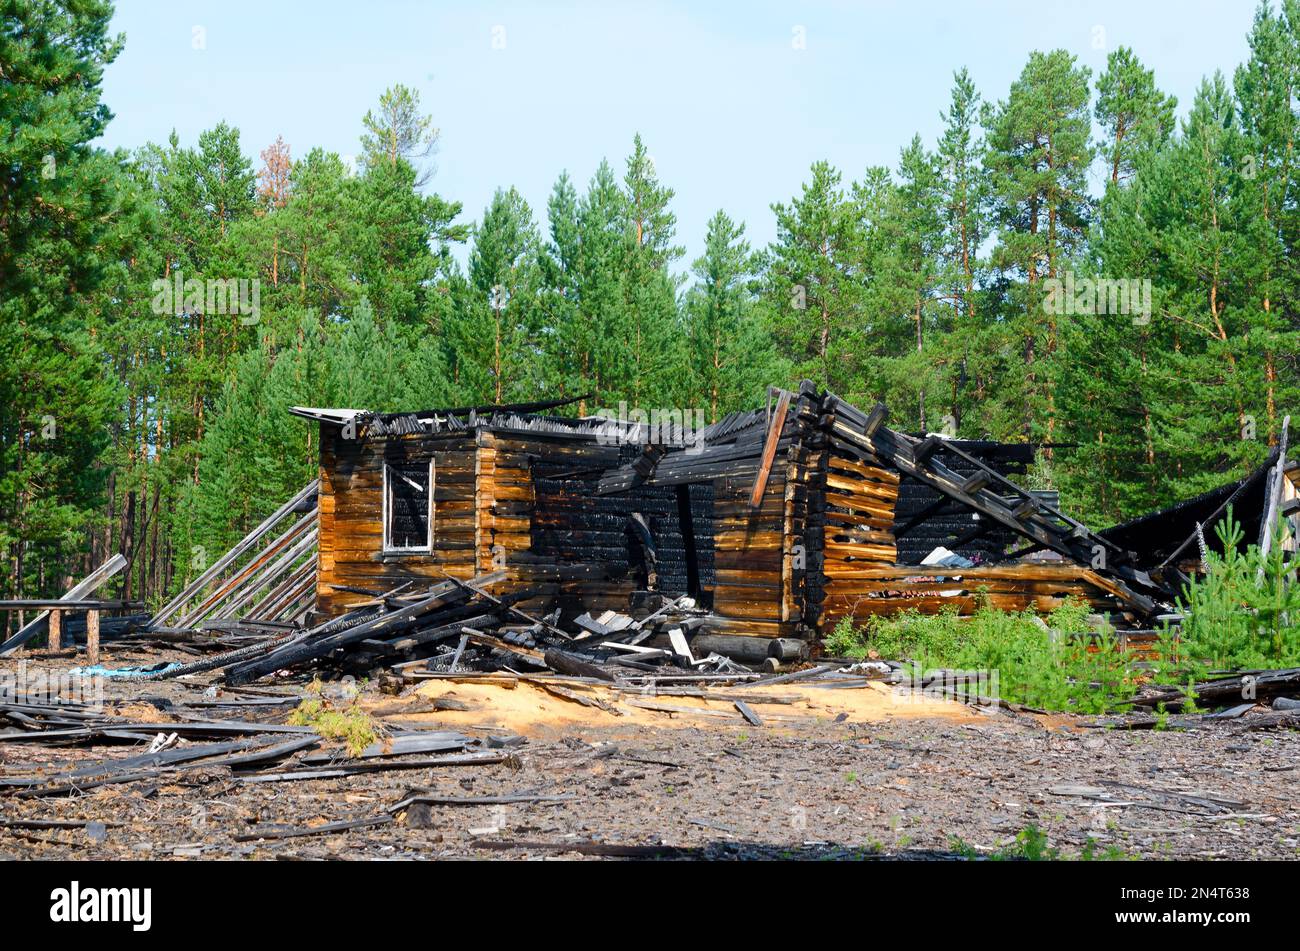 Die Überreste eines gebrannten Holzhauses nach einem Brand ohne Dach mit verkohlten Holzstämmen im Wald der nördlichen Taiga von Yakutia. Stockfoto